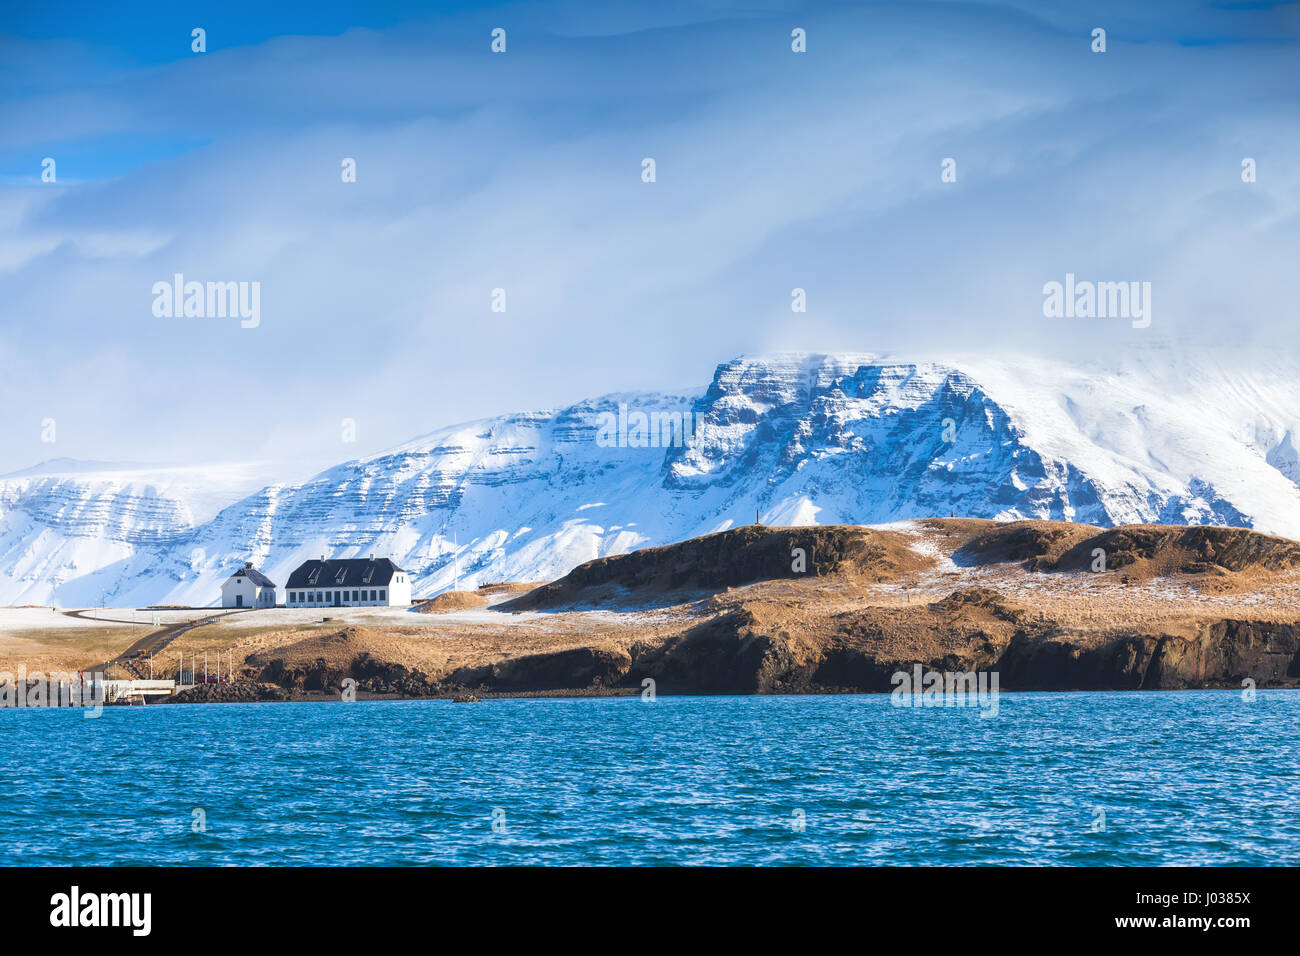 Paysage islandais côtières avec les montagnes enneigées et petit salon chambre sous ciel bleu dramatique. Région de Reykjavik, Islande Banque D'Images